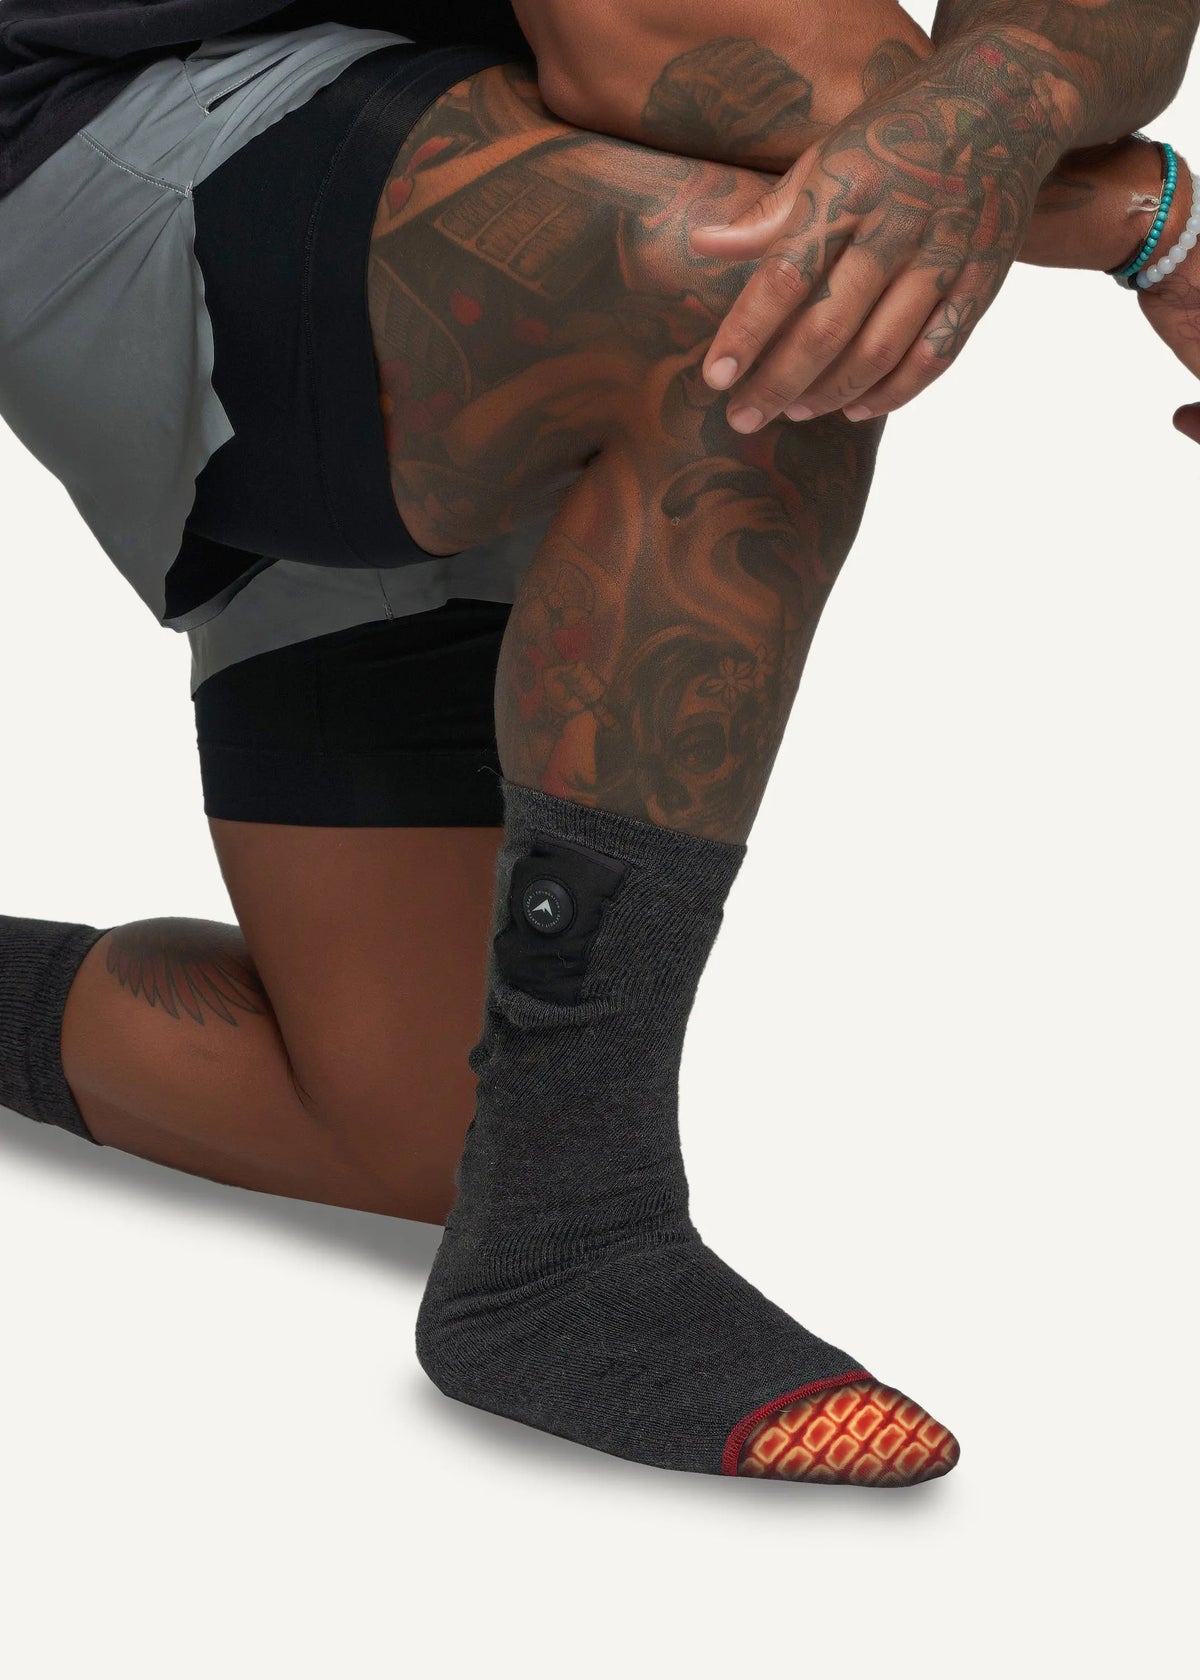 FNDN Heated 3.7V Sports Socks